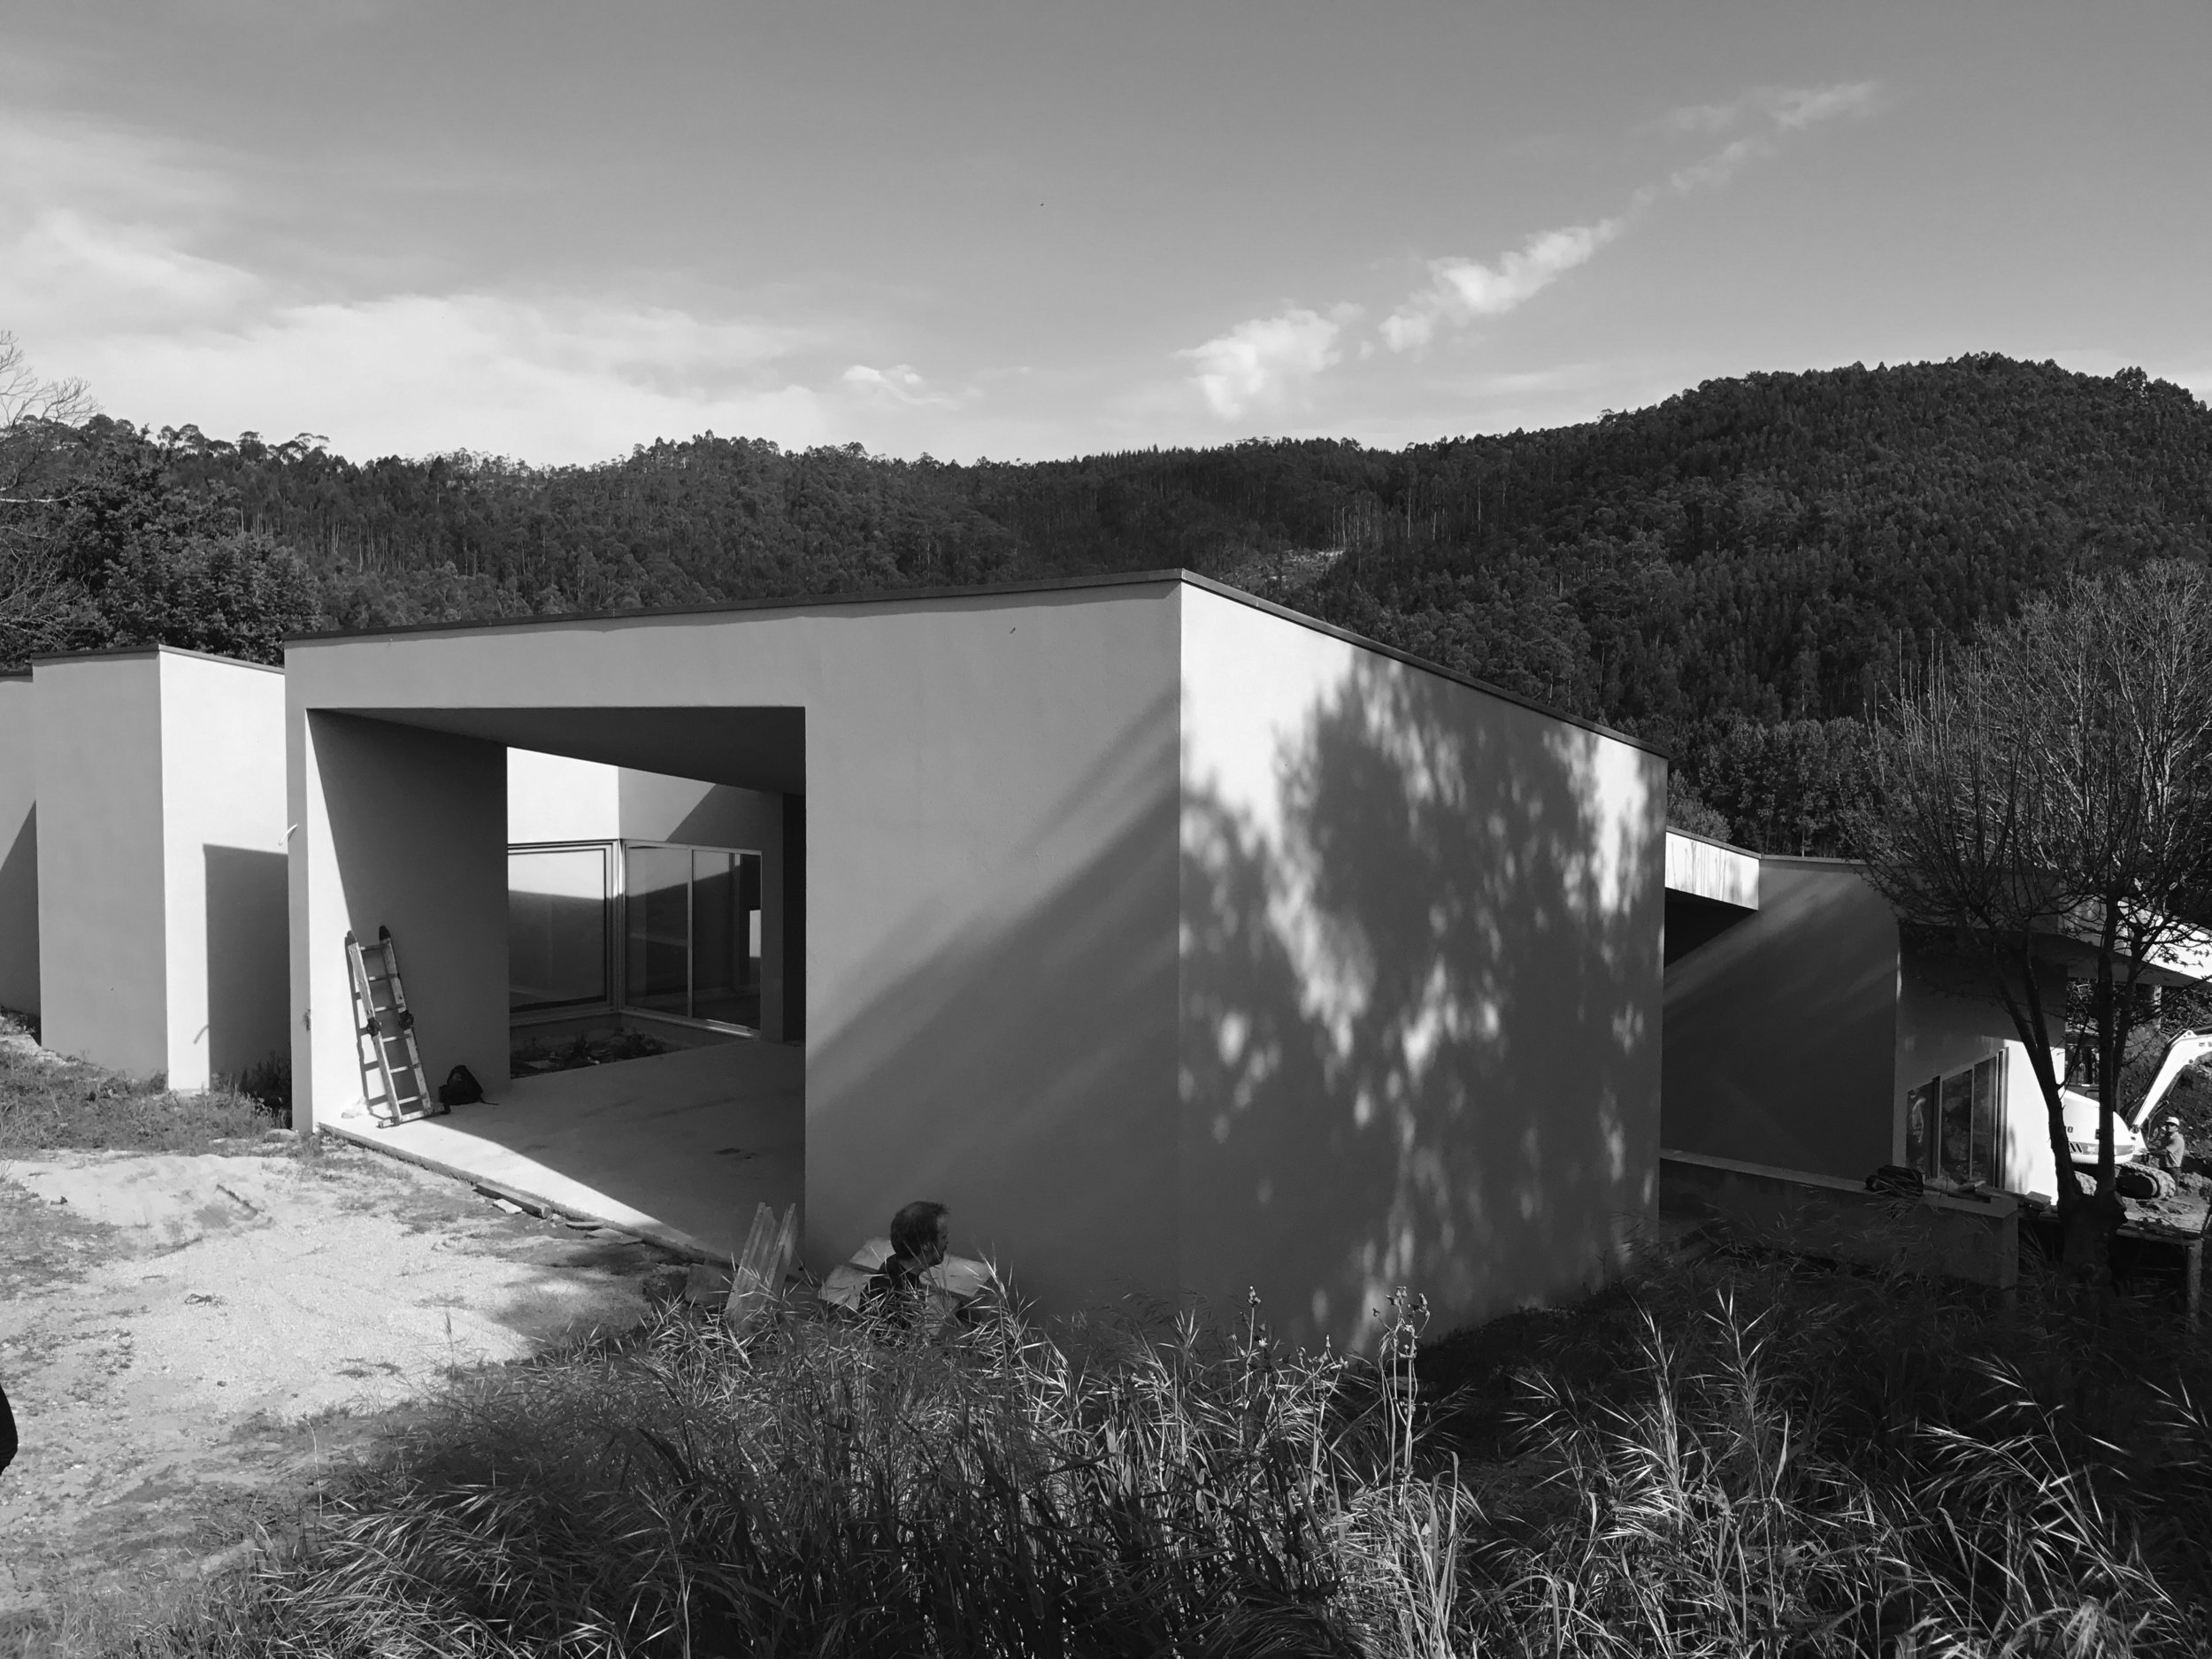 Moradia S+N - arquitectura - arquitectos - porto - oliveira de azemeis - construção - projecto - eva evolutionary architecture (1).jpg